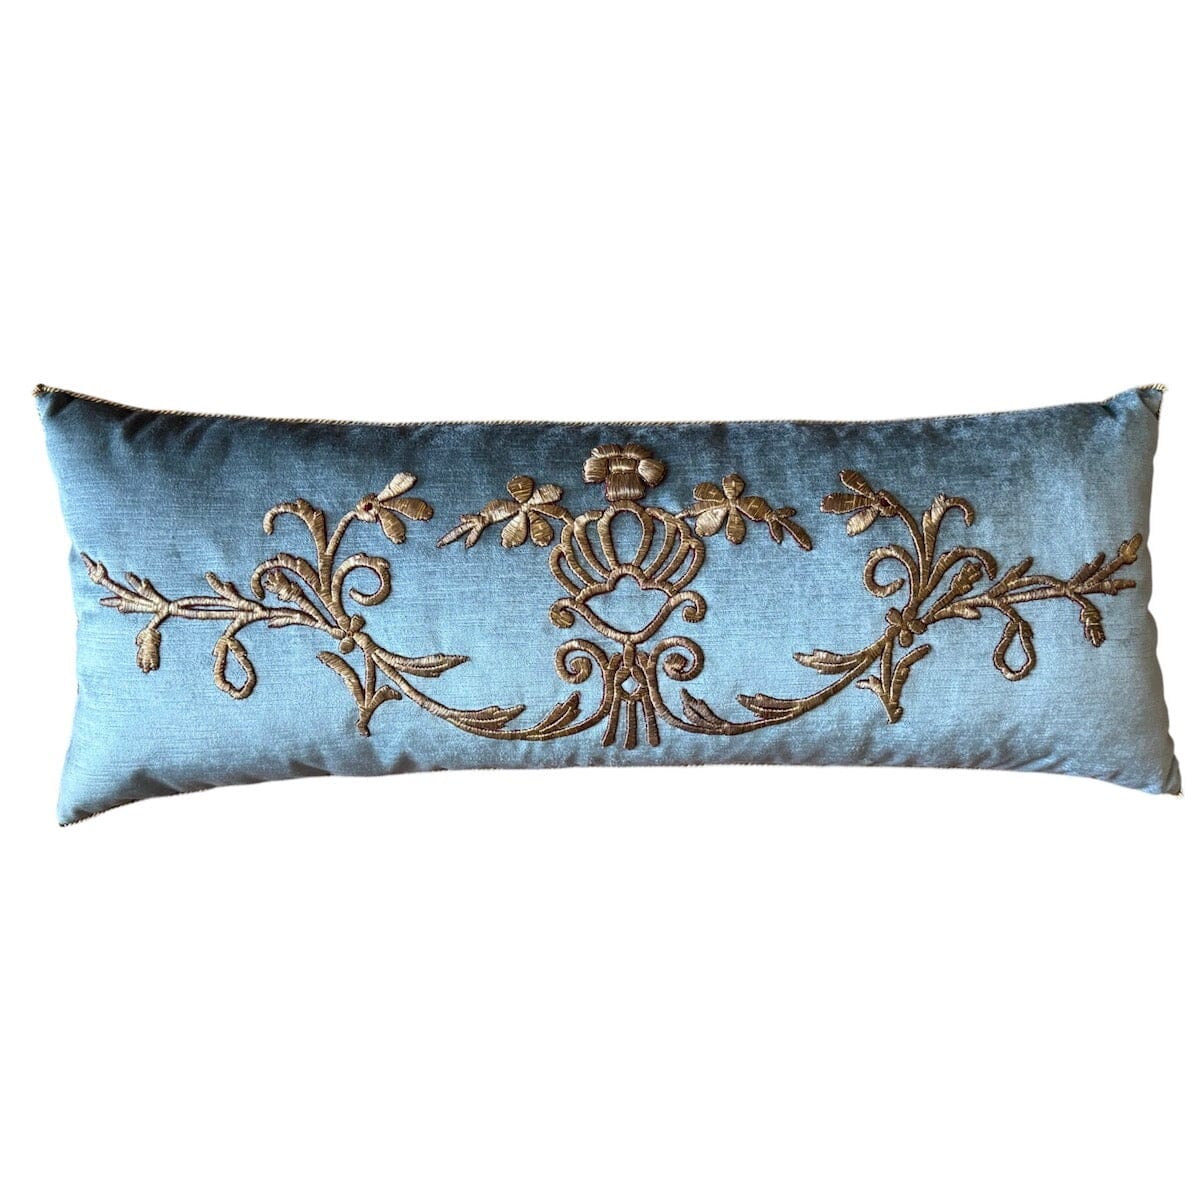 Antique Ottoman Empire Gold Metallic Embroidery (#E131523 | 14 x 36") New Pillows B. Viz Design 